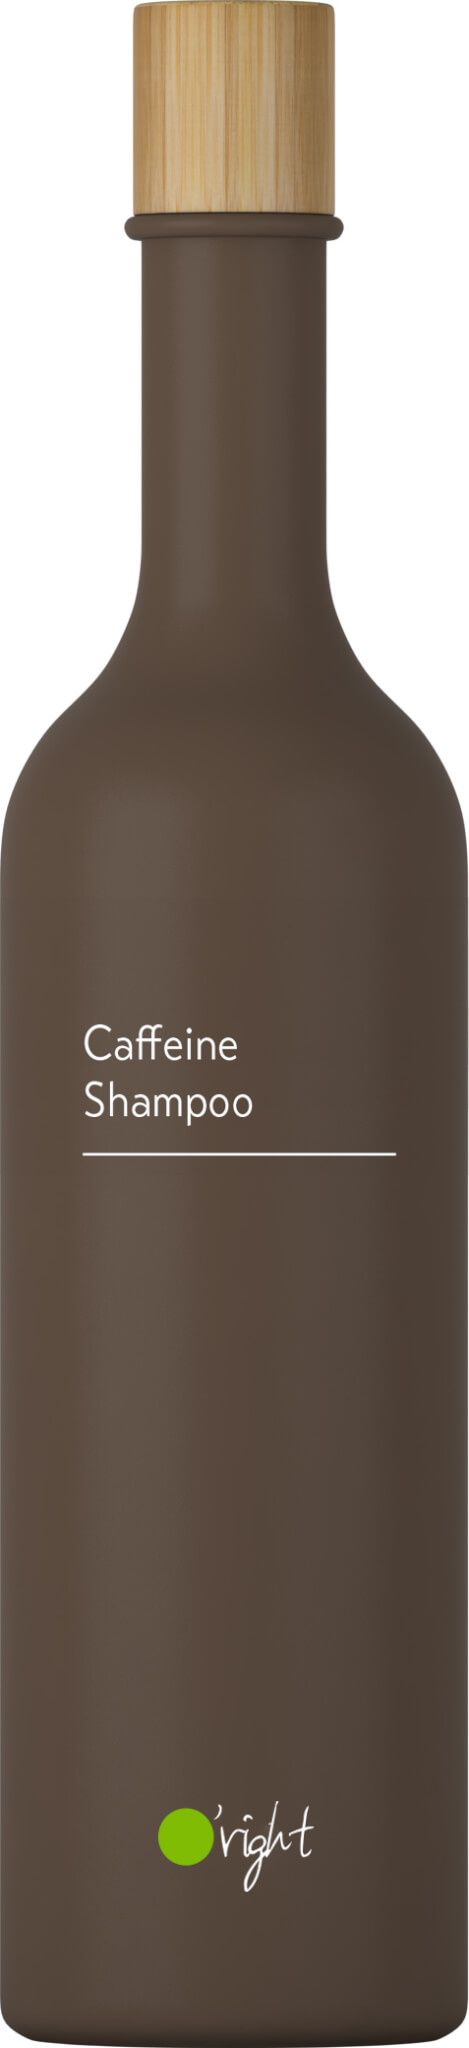 szampon oright kawowy ceneo